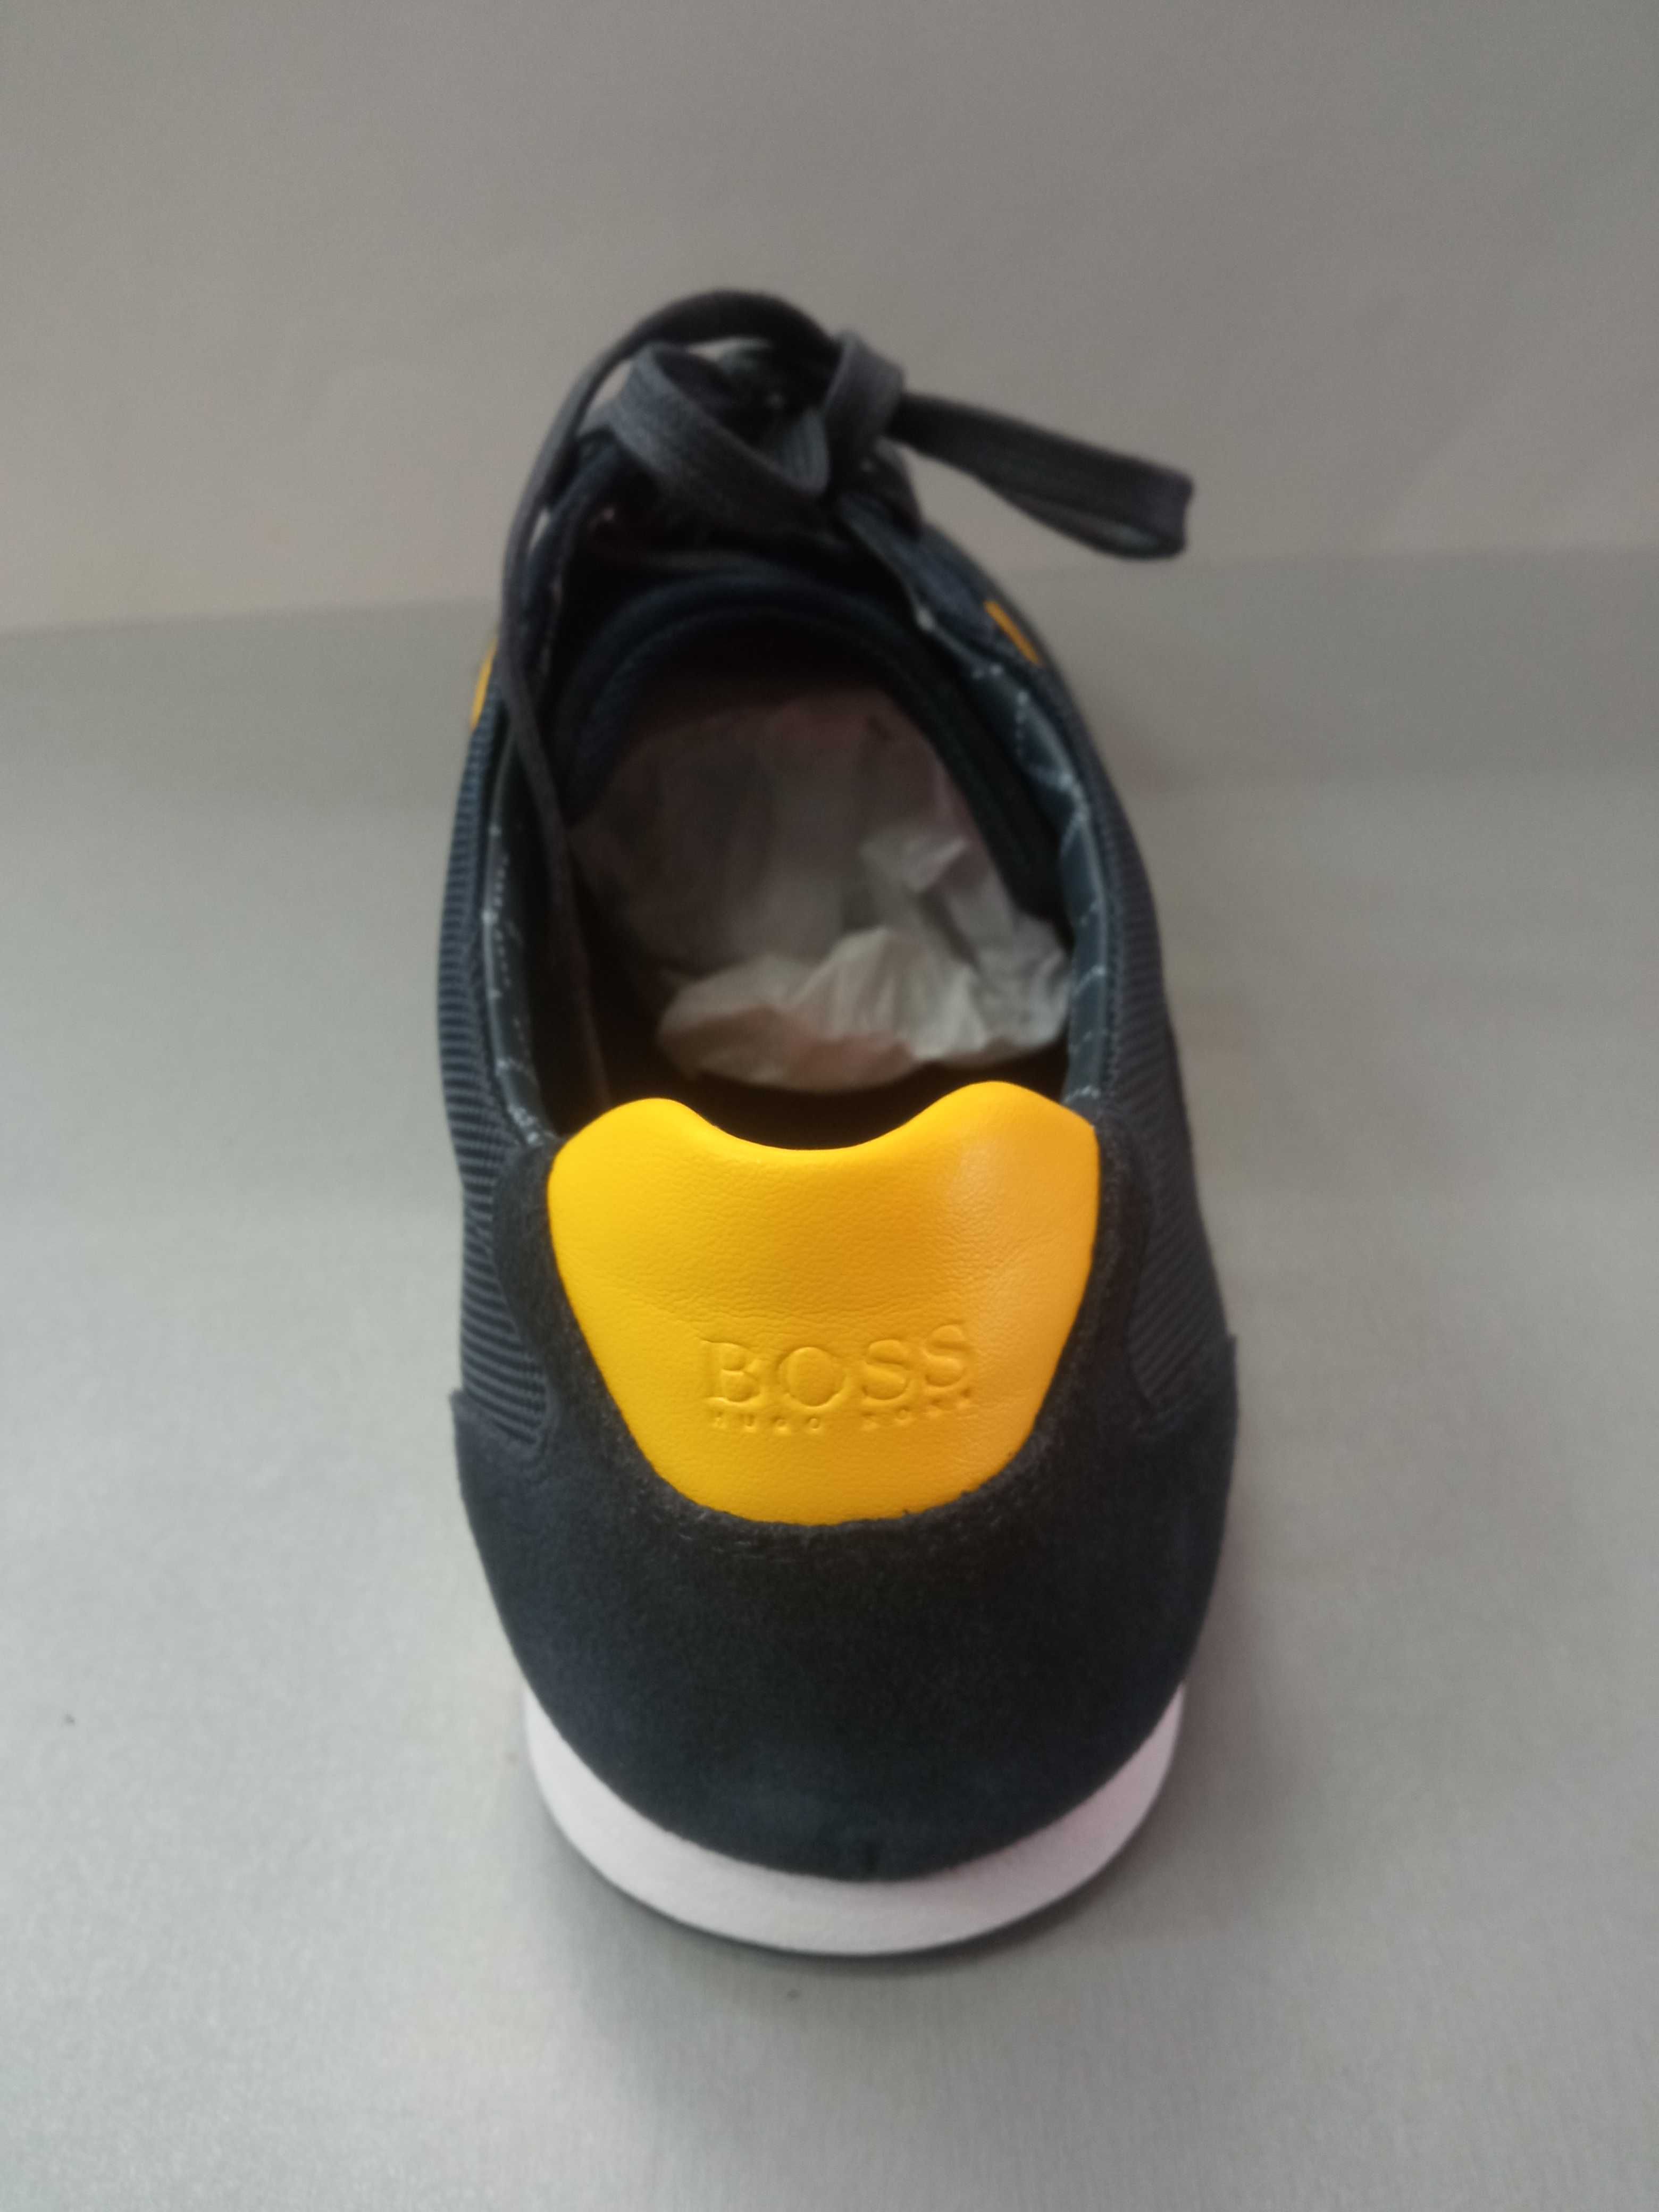 Hugo Boss N40,43.Мъжки обувки.Нови.Оригинал.